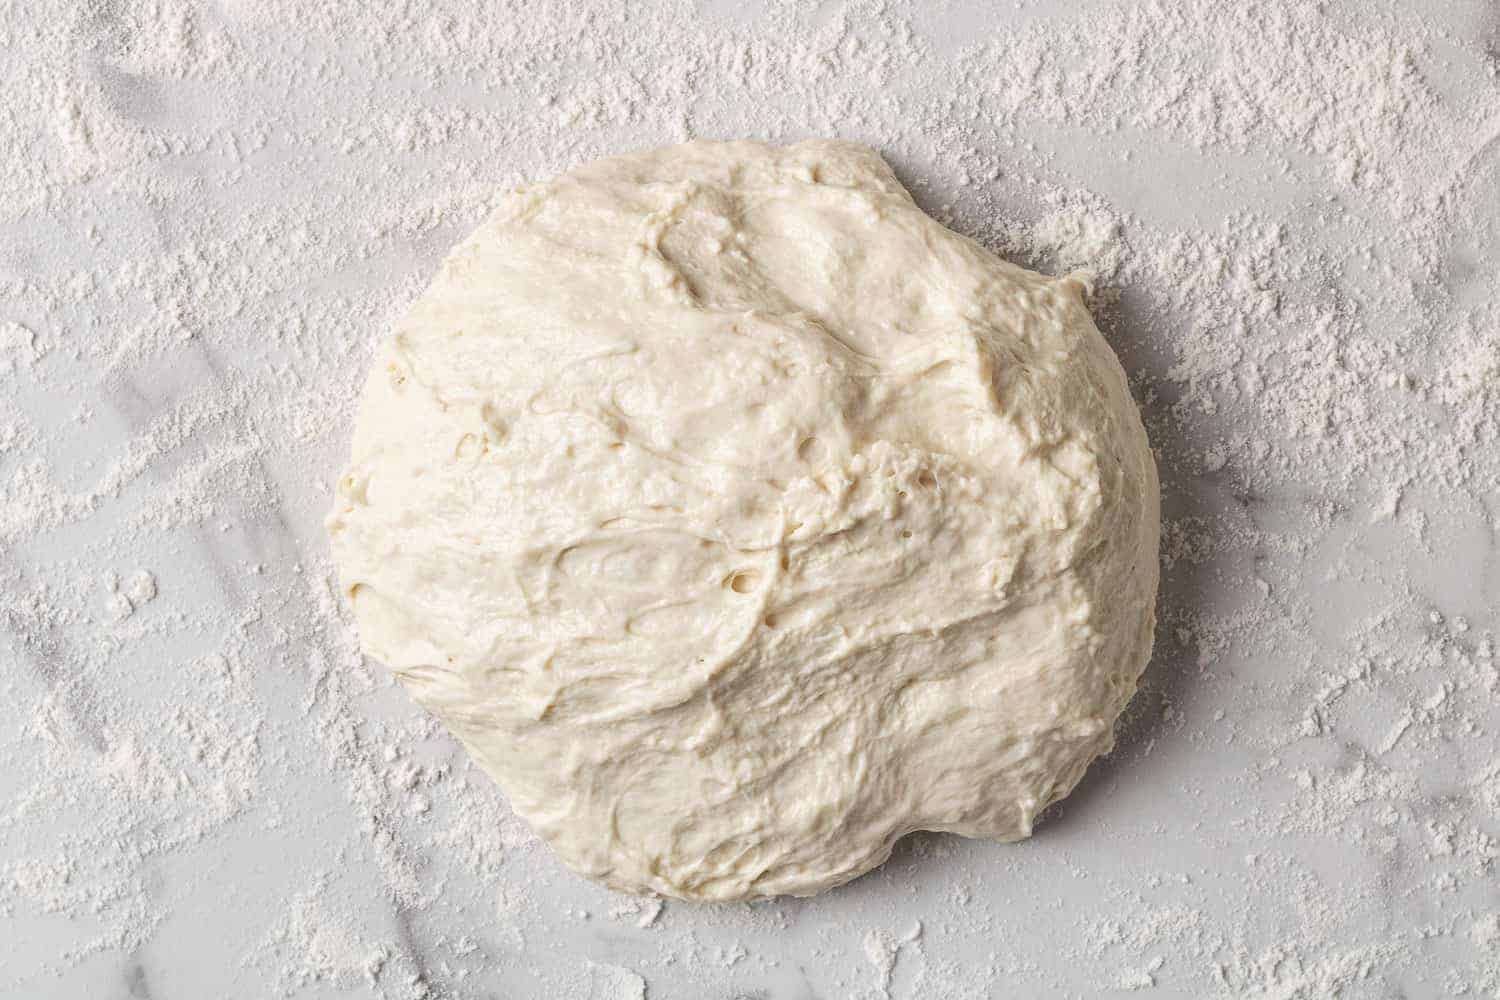 Ball of dough on a floured surface.